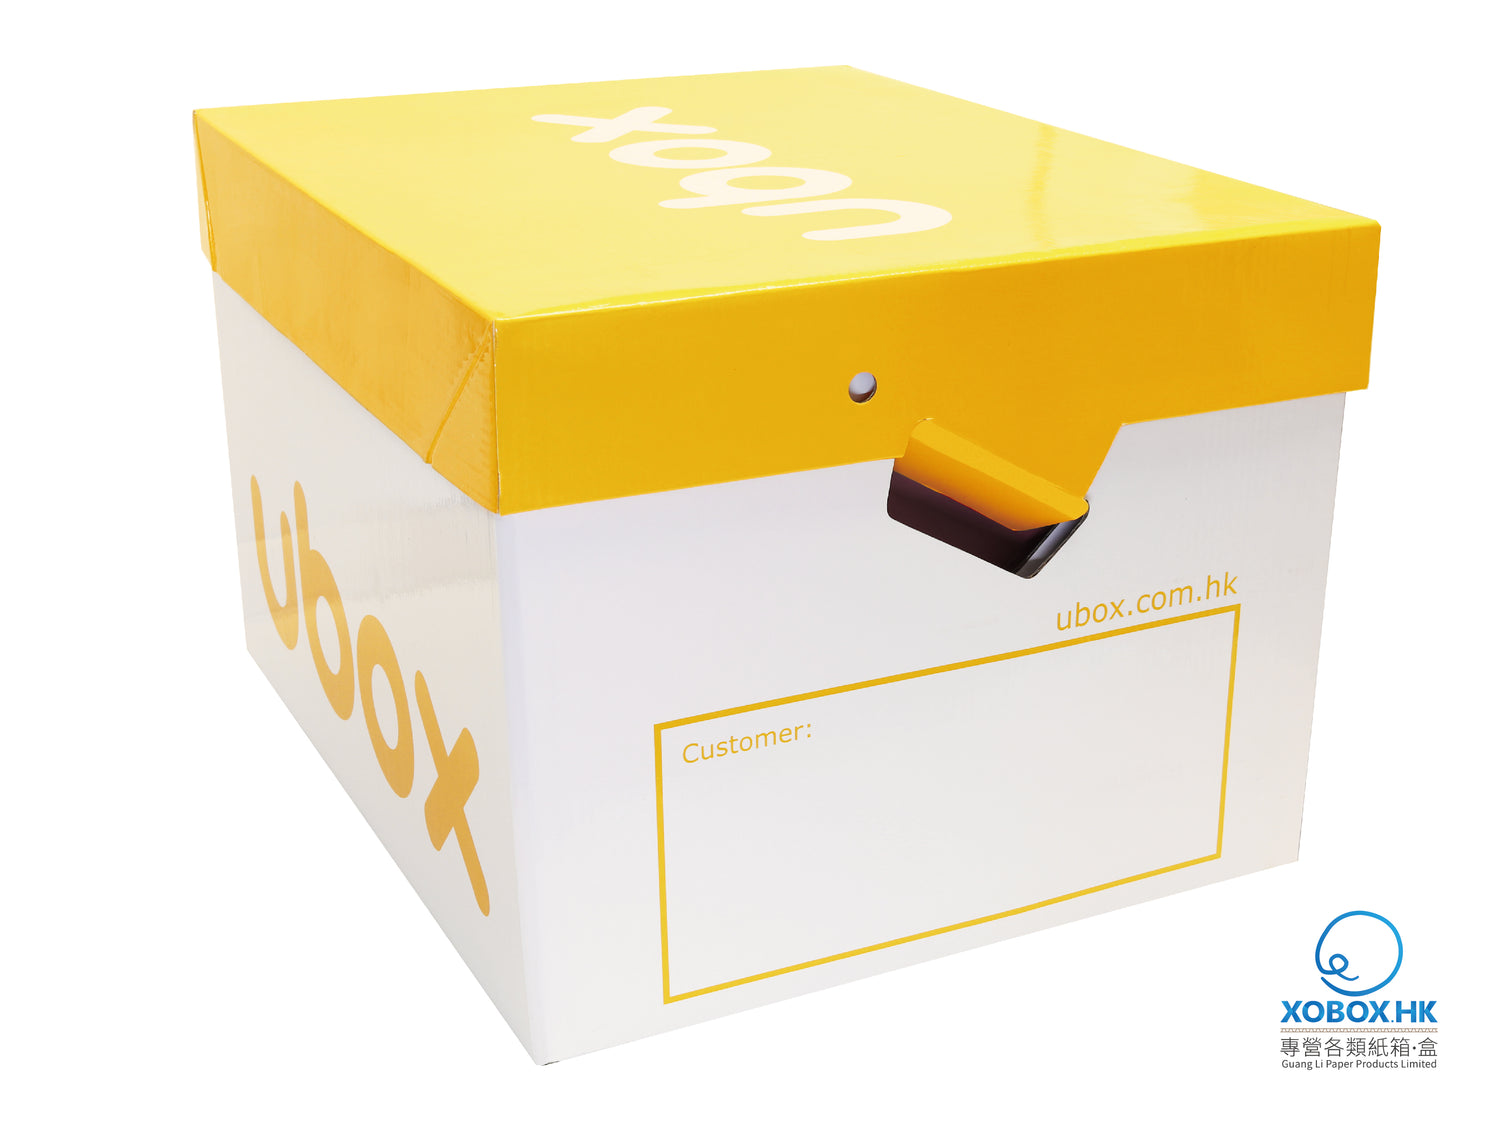 H1501006 Ubox StorageBox